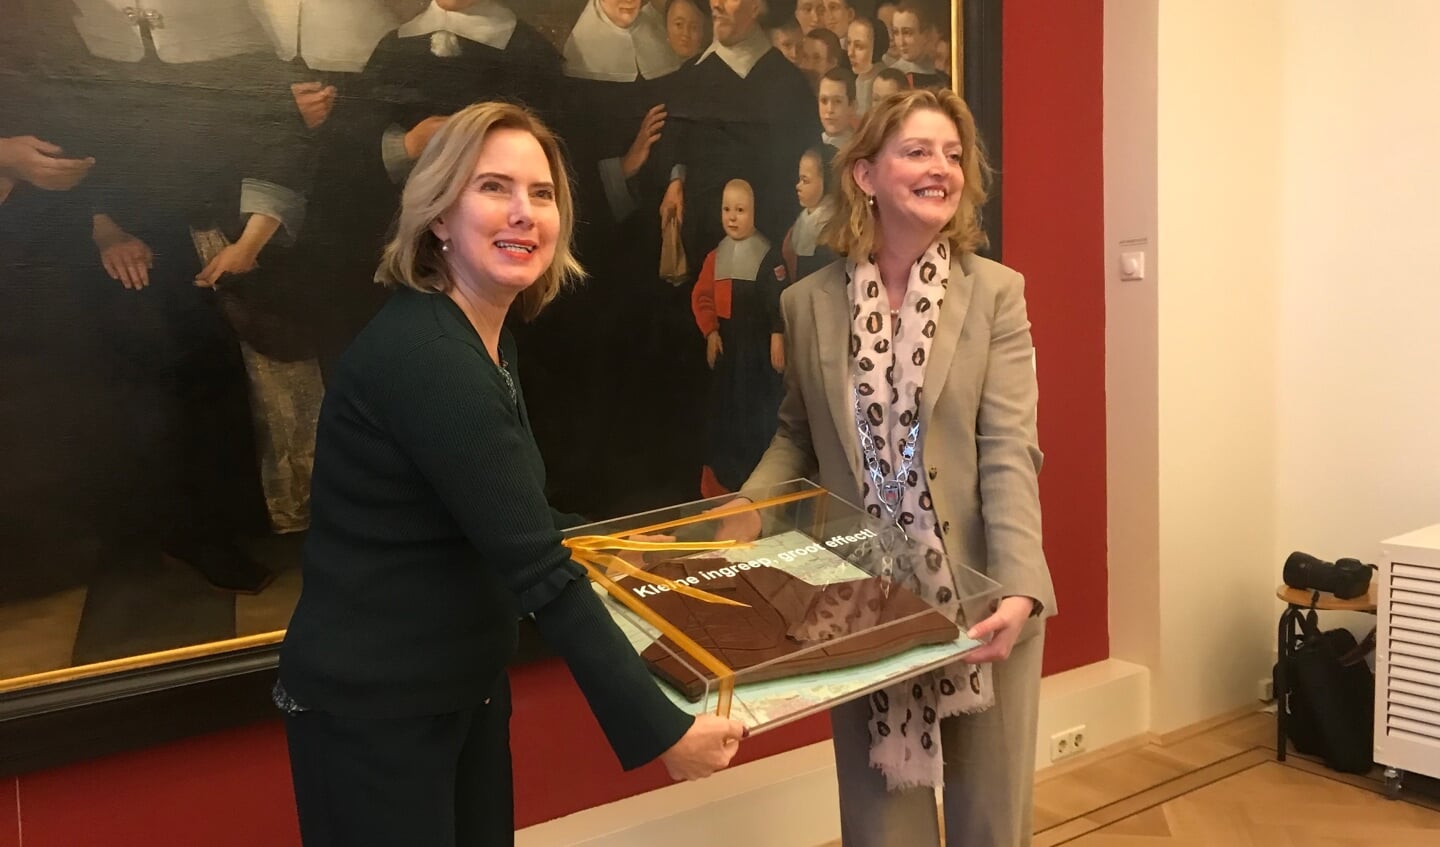 De minister kreeg in het Gorcums Museum een chocolade taart cadeau